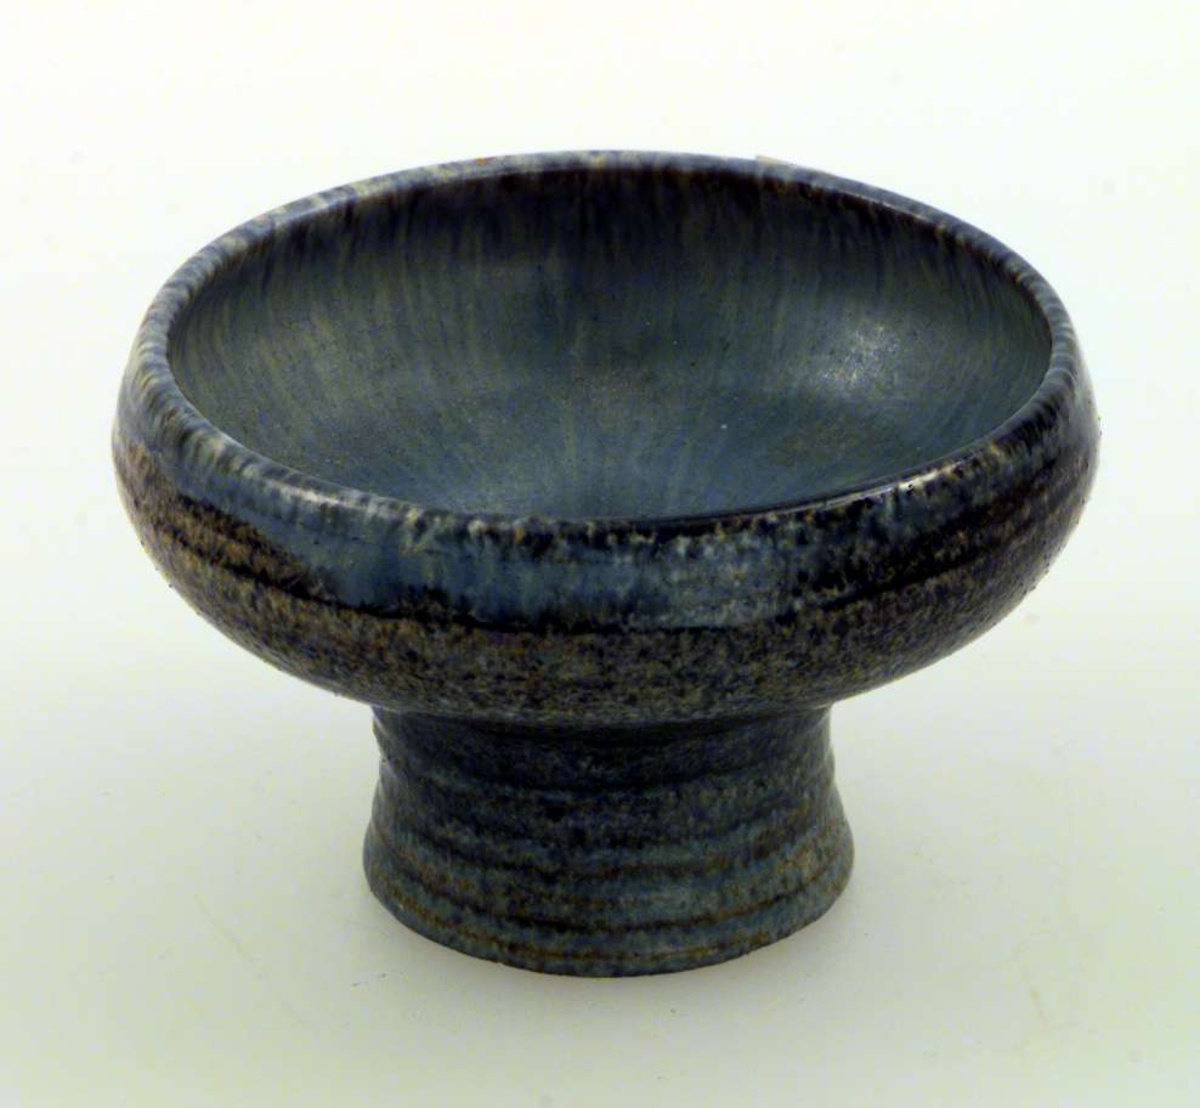 Skål med høy fot. Skålen er av keramikk. Den har blågrå glasur.